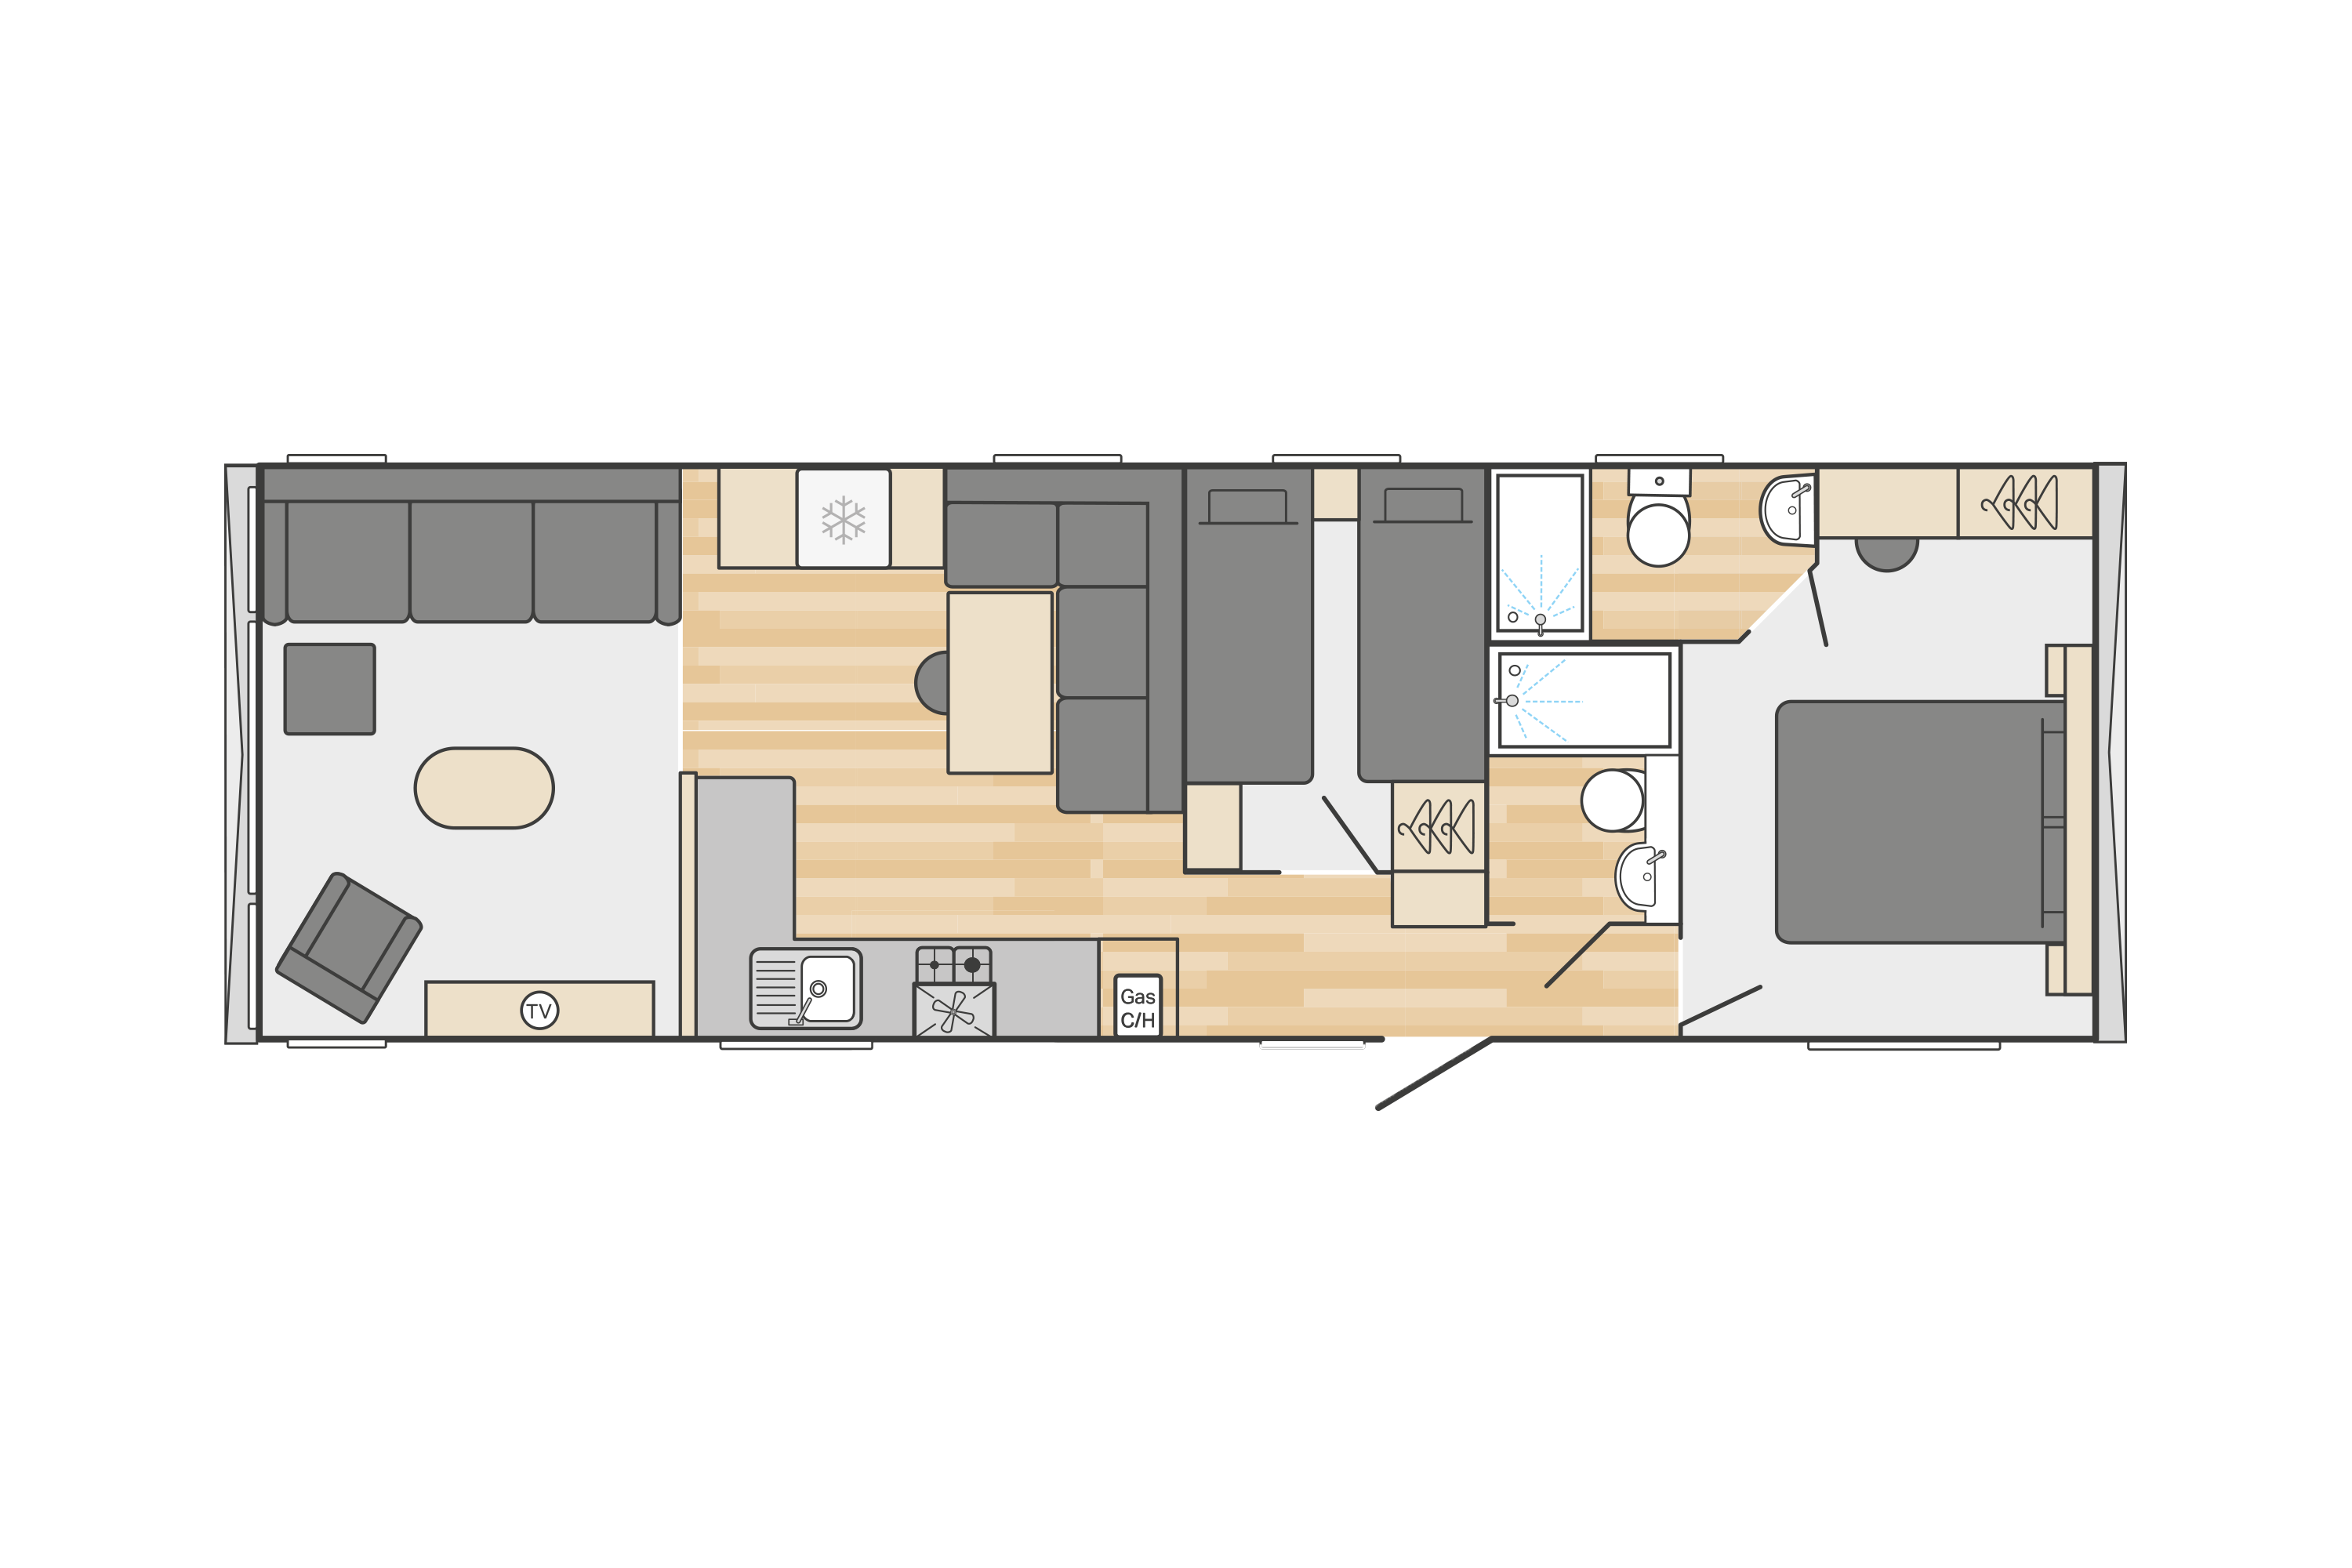 Moselle (scandi) 38' x 12' - 2 Bedroom floorplan